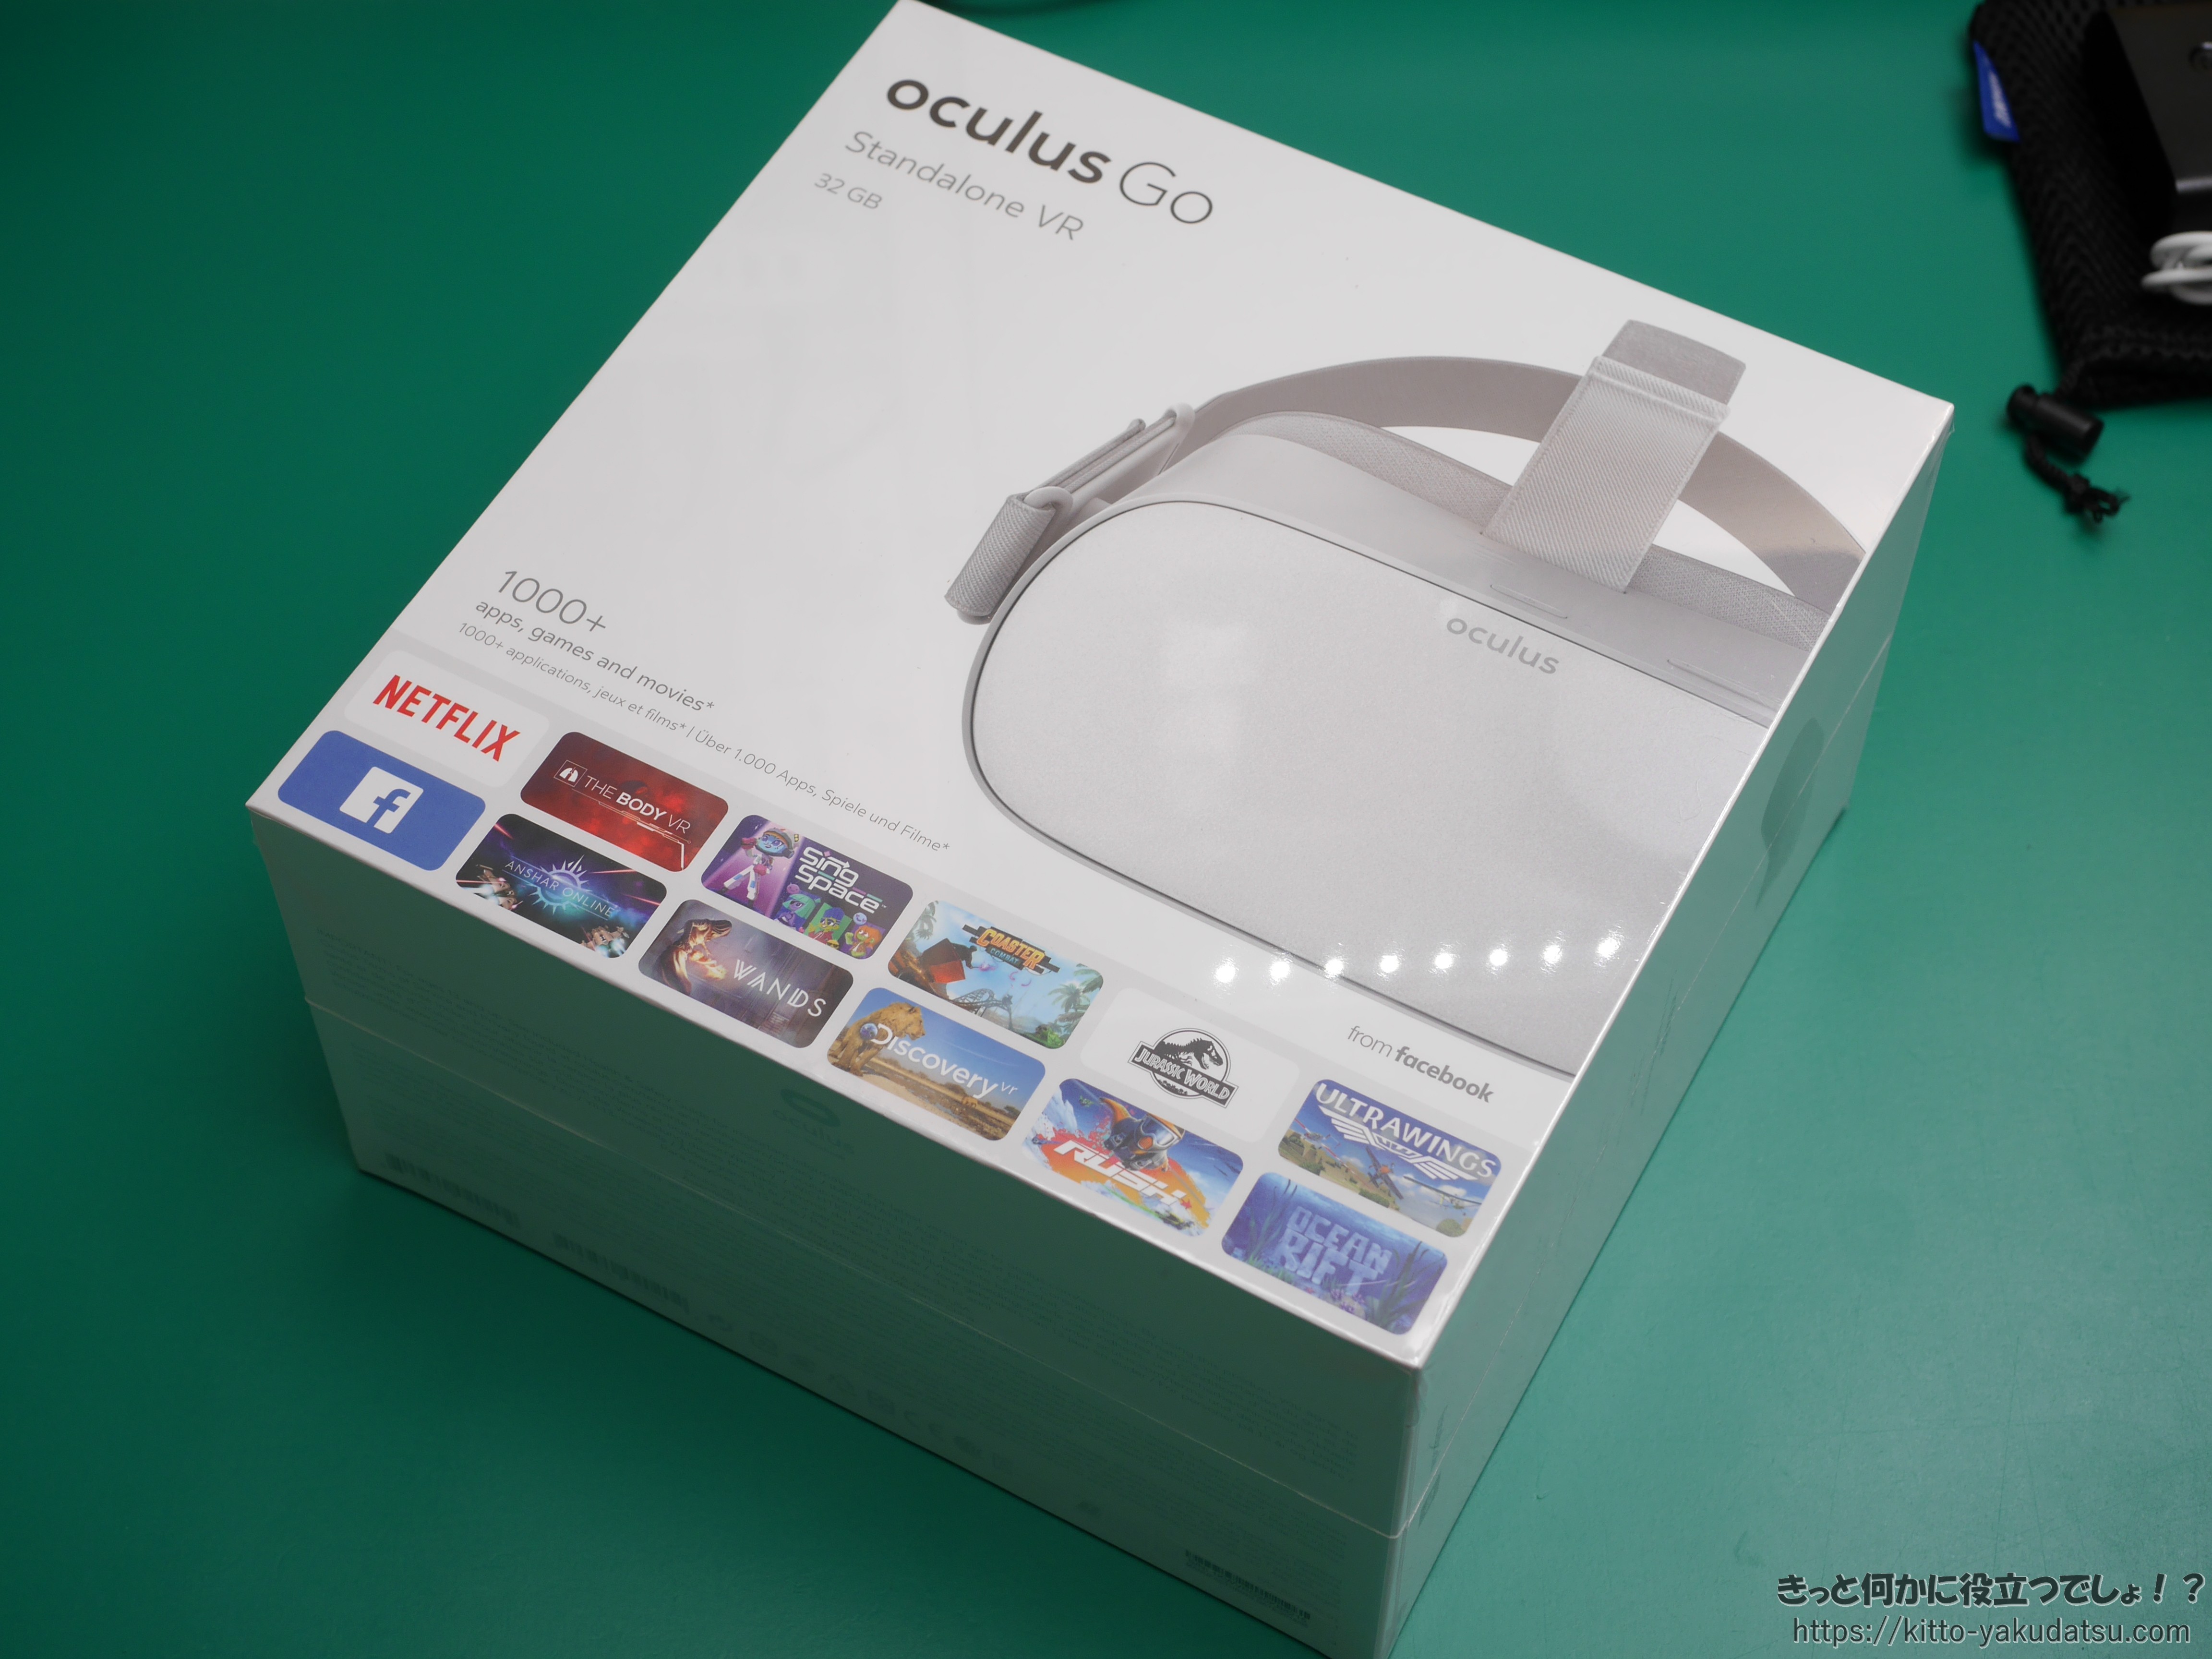 お手軽スタンドアローンVR機「Oculus Go」買いました♪ | きっと何かに